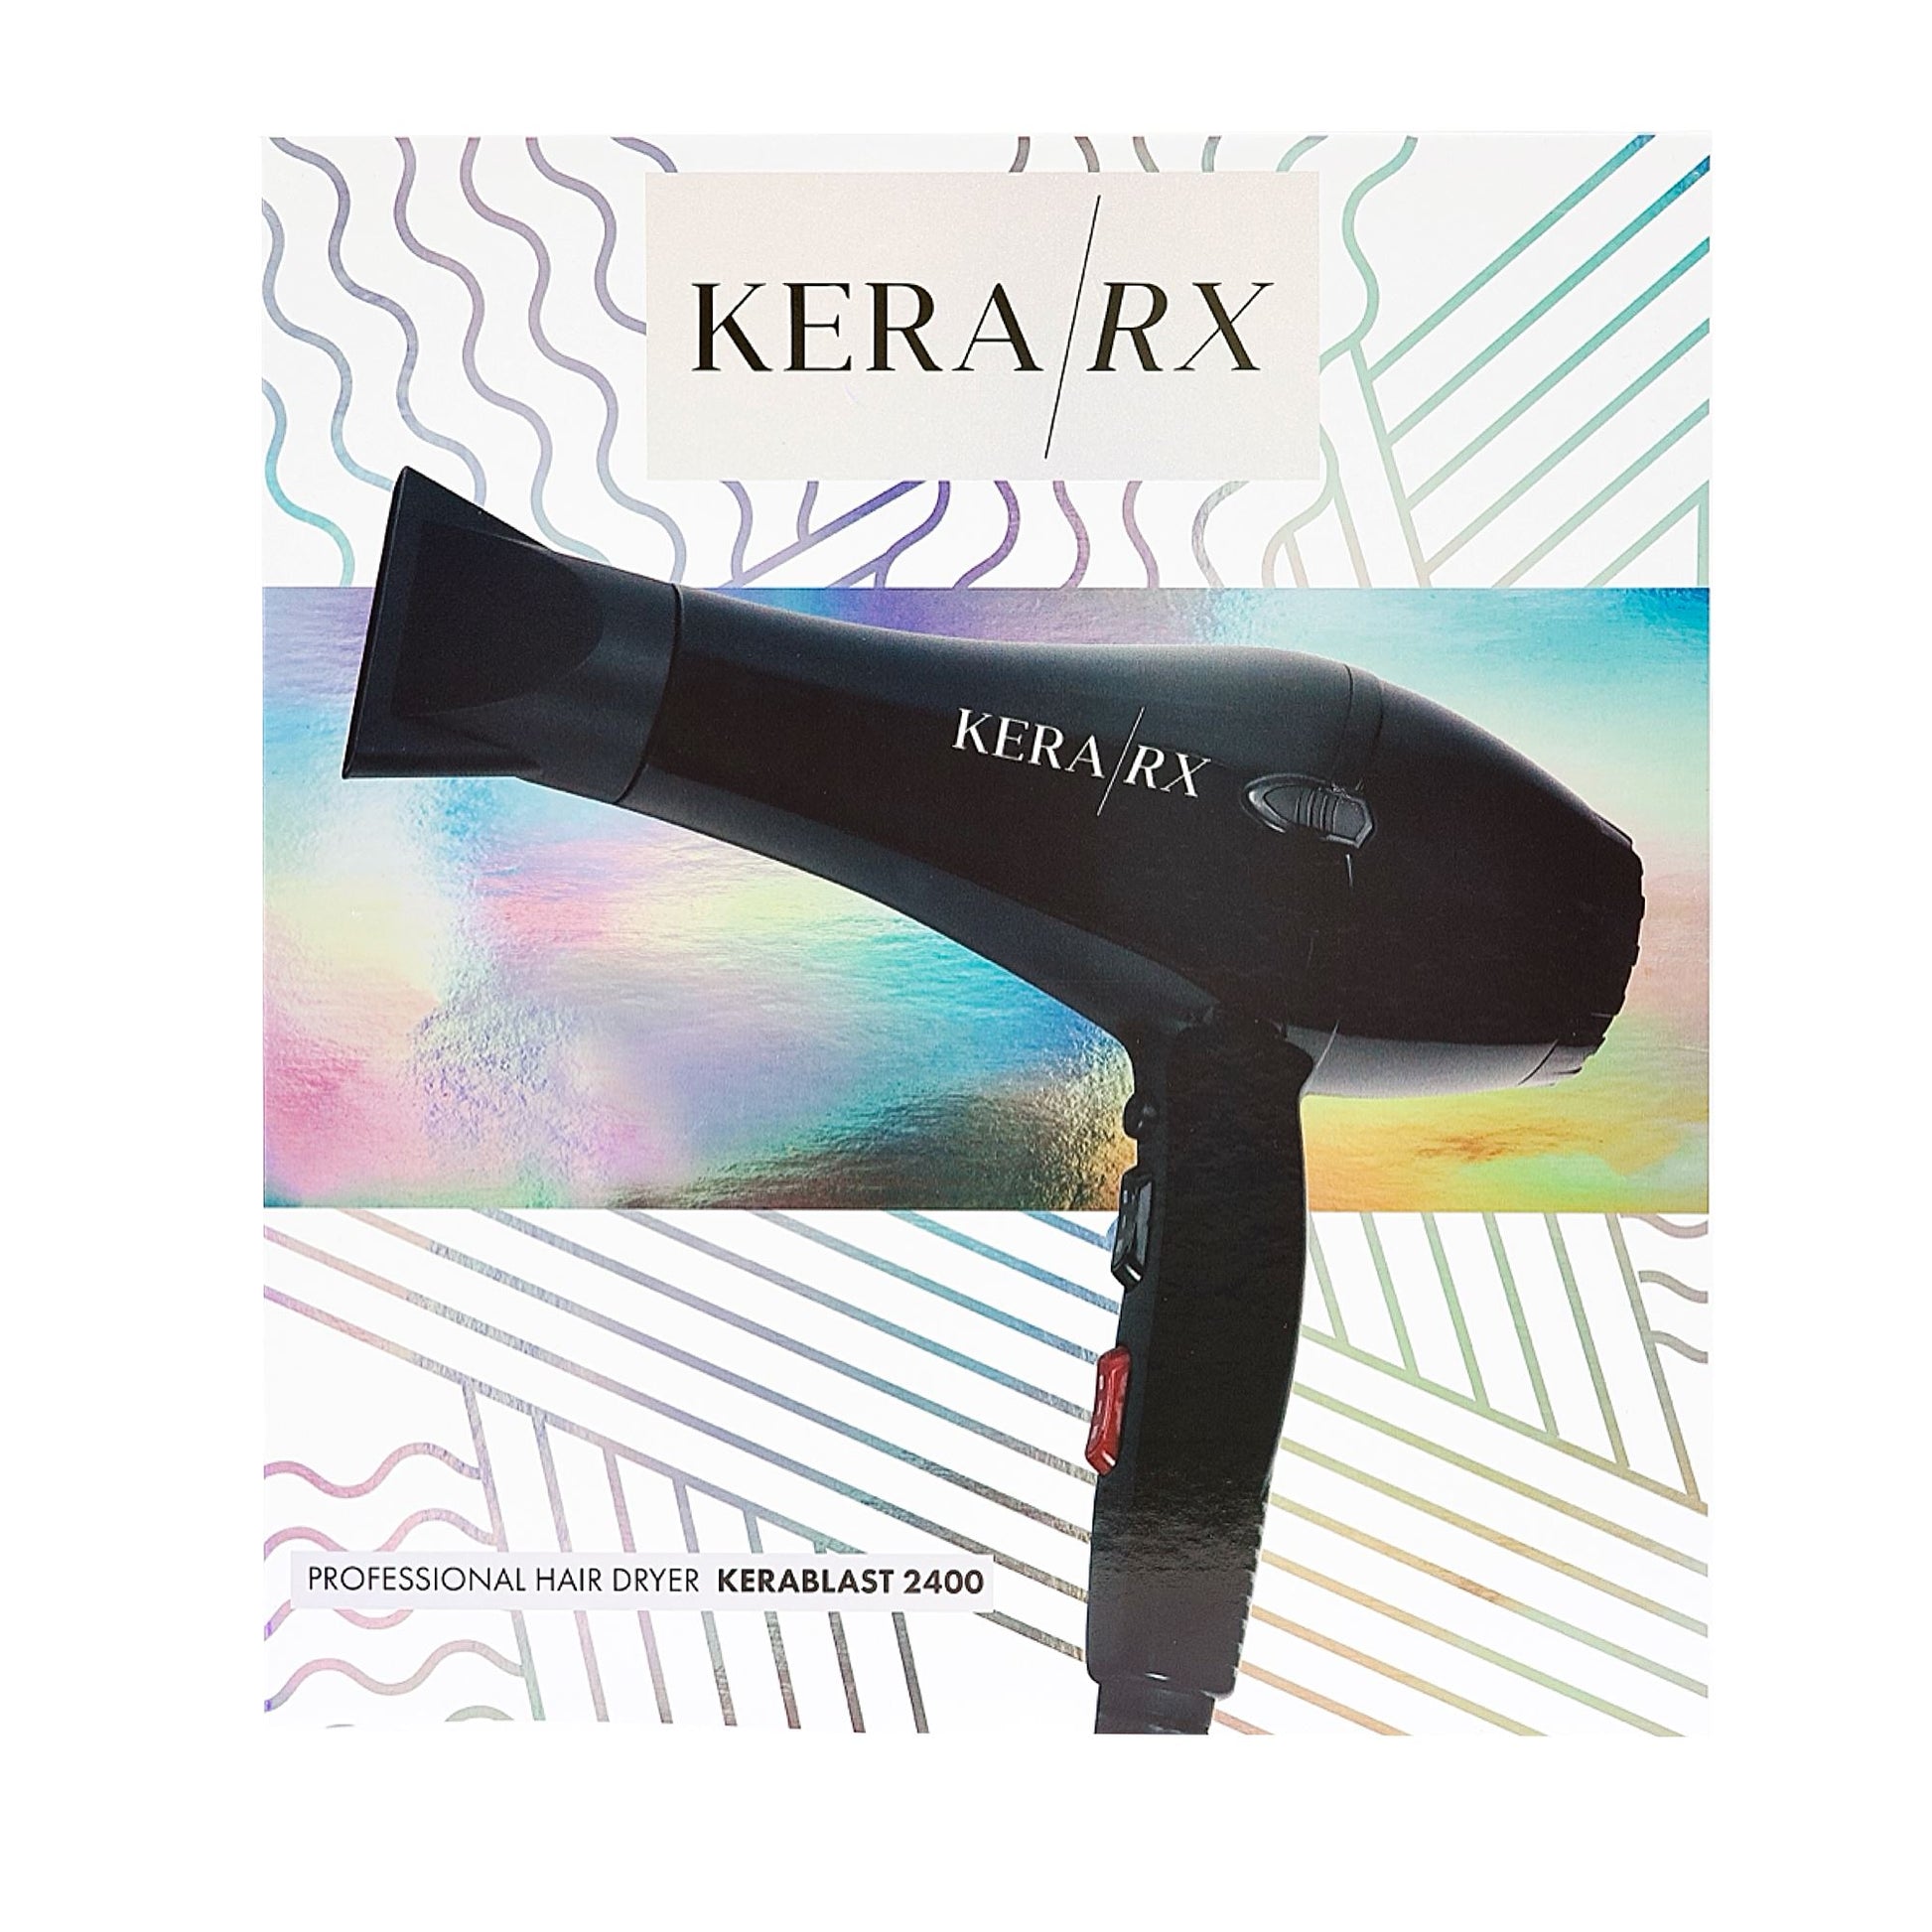 Professional Hair Dryer | KERABLAST 2400 | KERA/RX Hair Styling Tools KERA/RX 